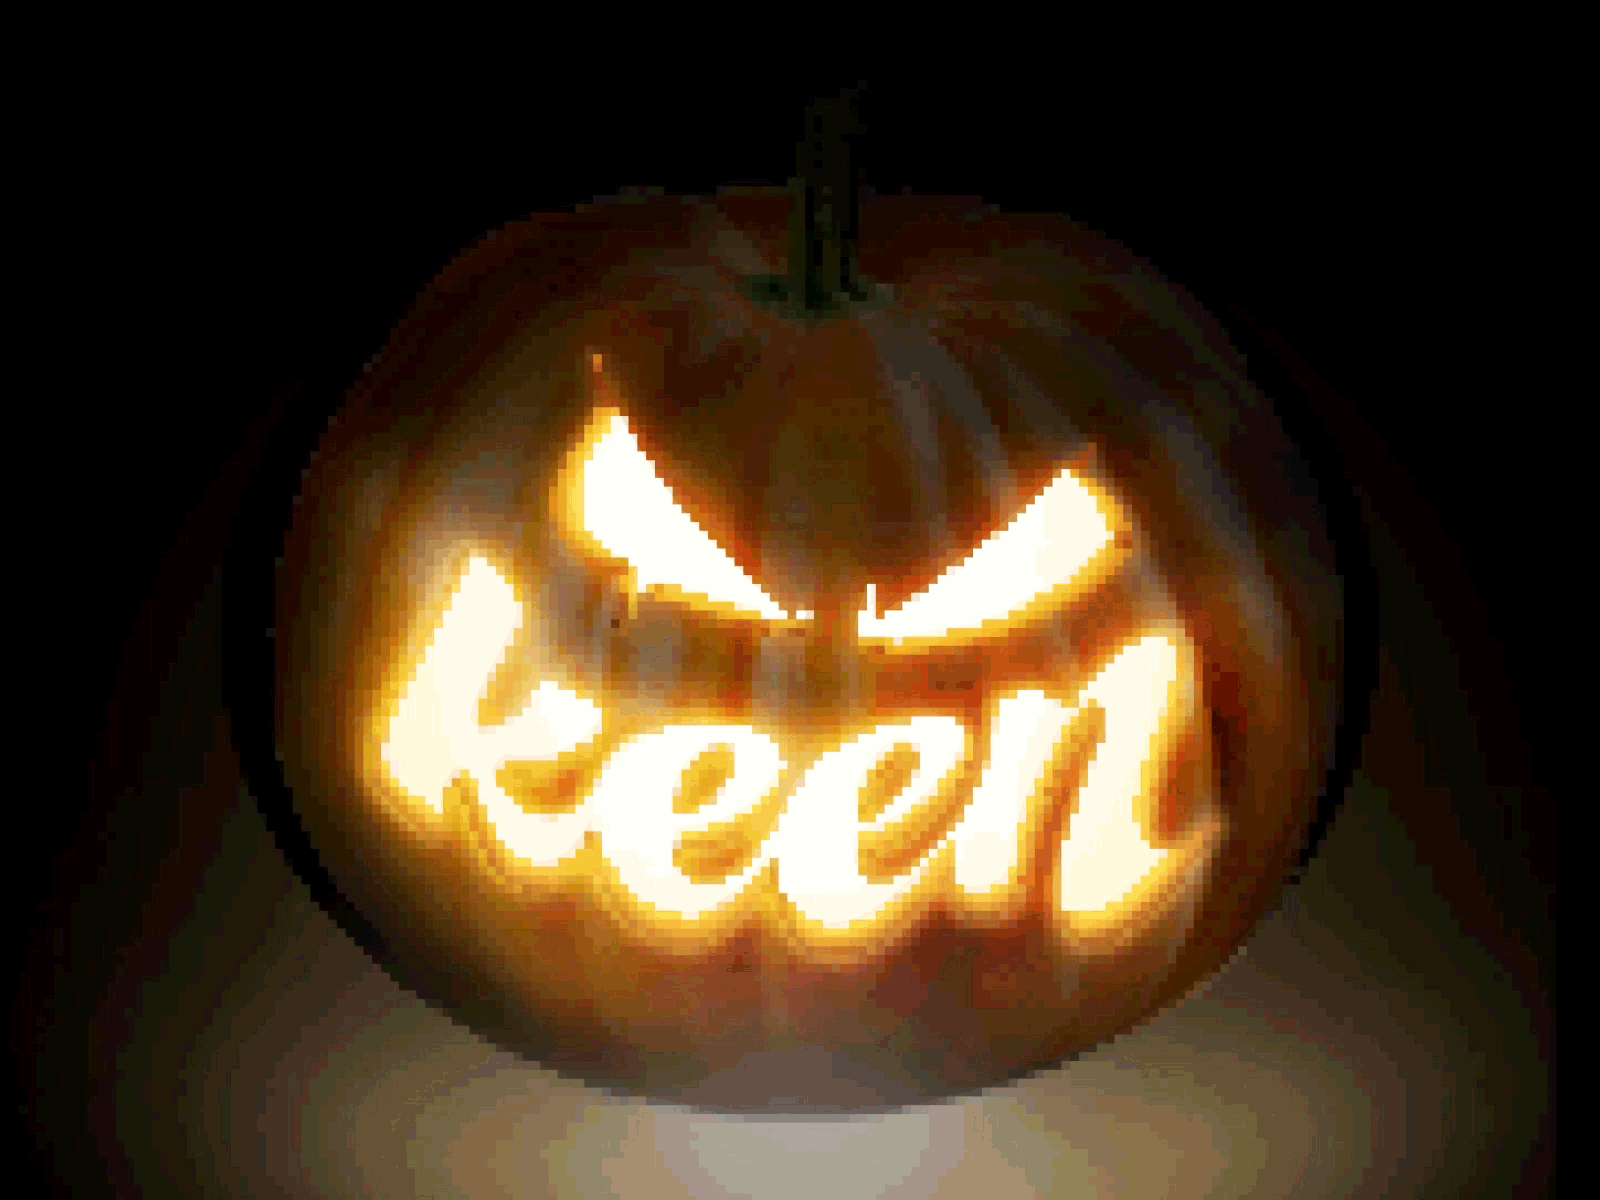 8-bit pumpkeen 8 bit 8 bit after effects aftereffects animate animation halloween illustration jack o lantern logo pixel art pumpkin pumpkins